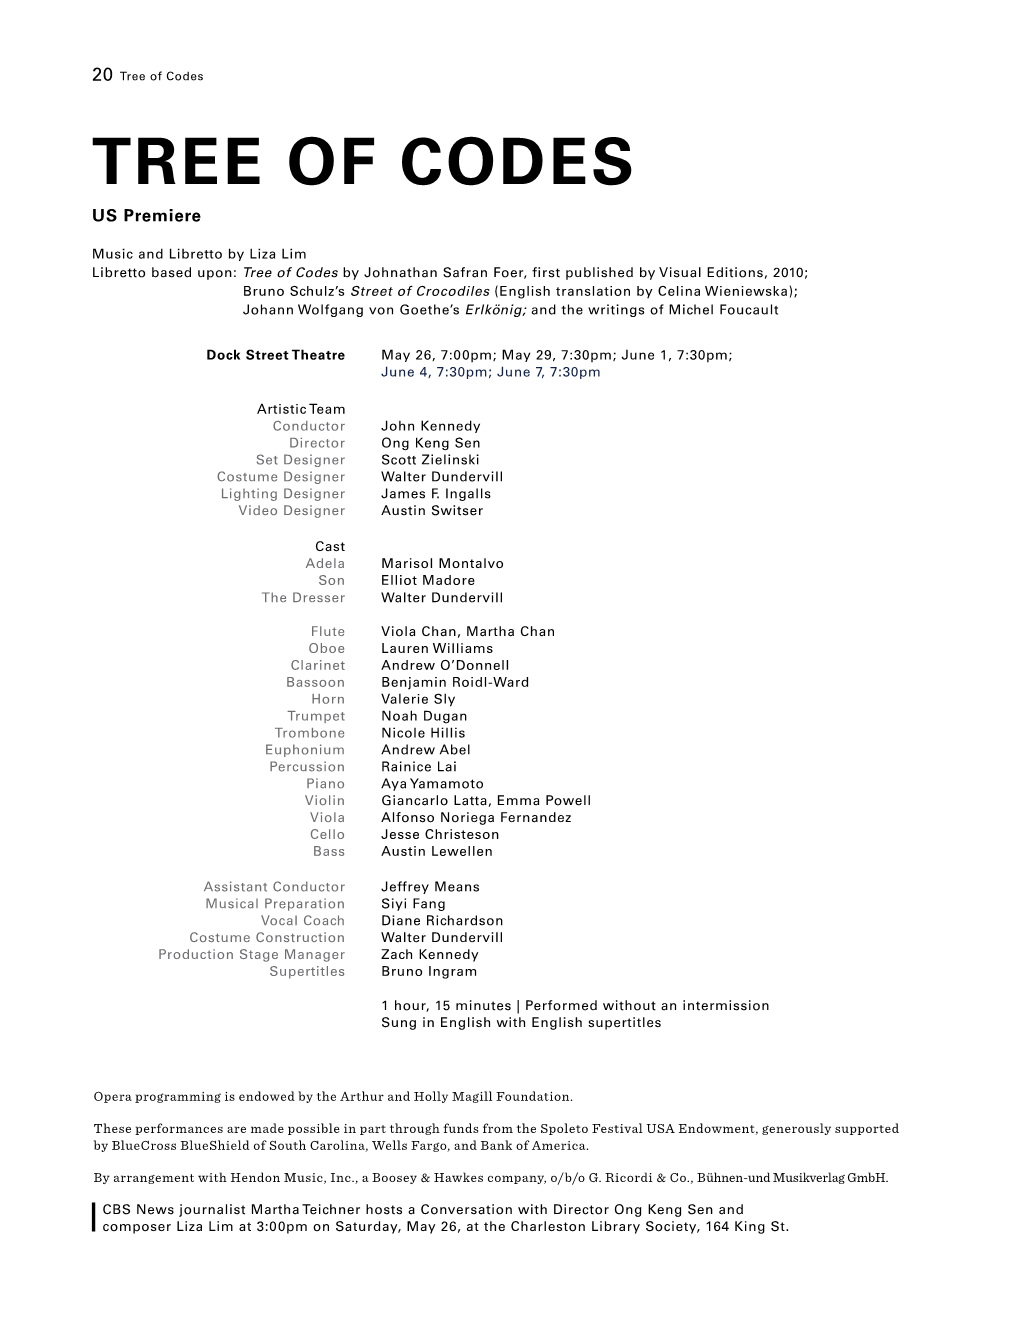 Tree-Of-Codes Spoleto Program